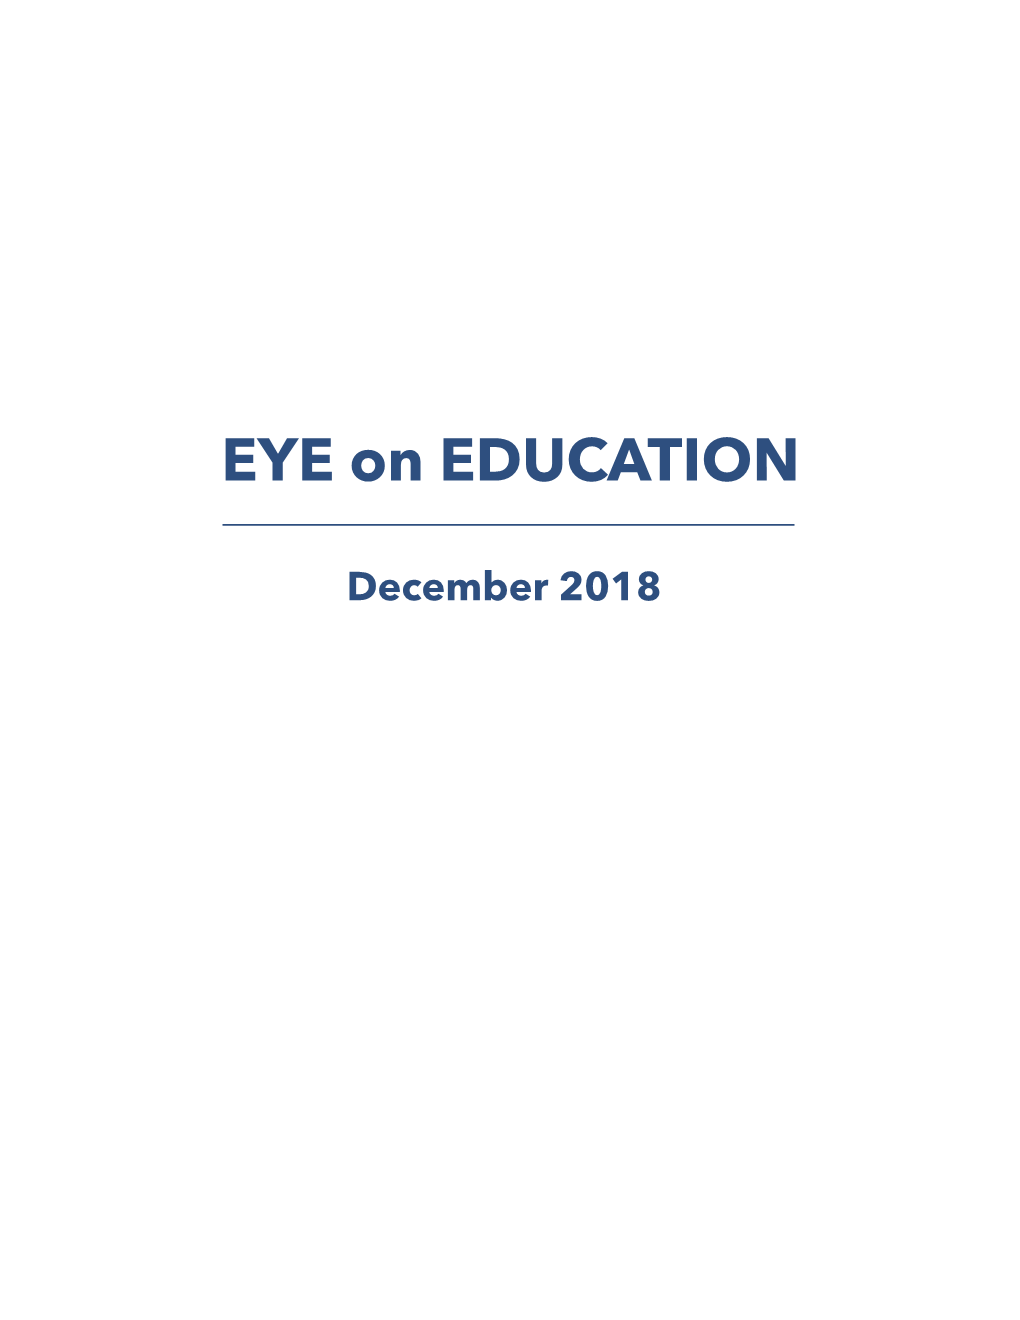 December 2018 Eye on Education - December 2018